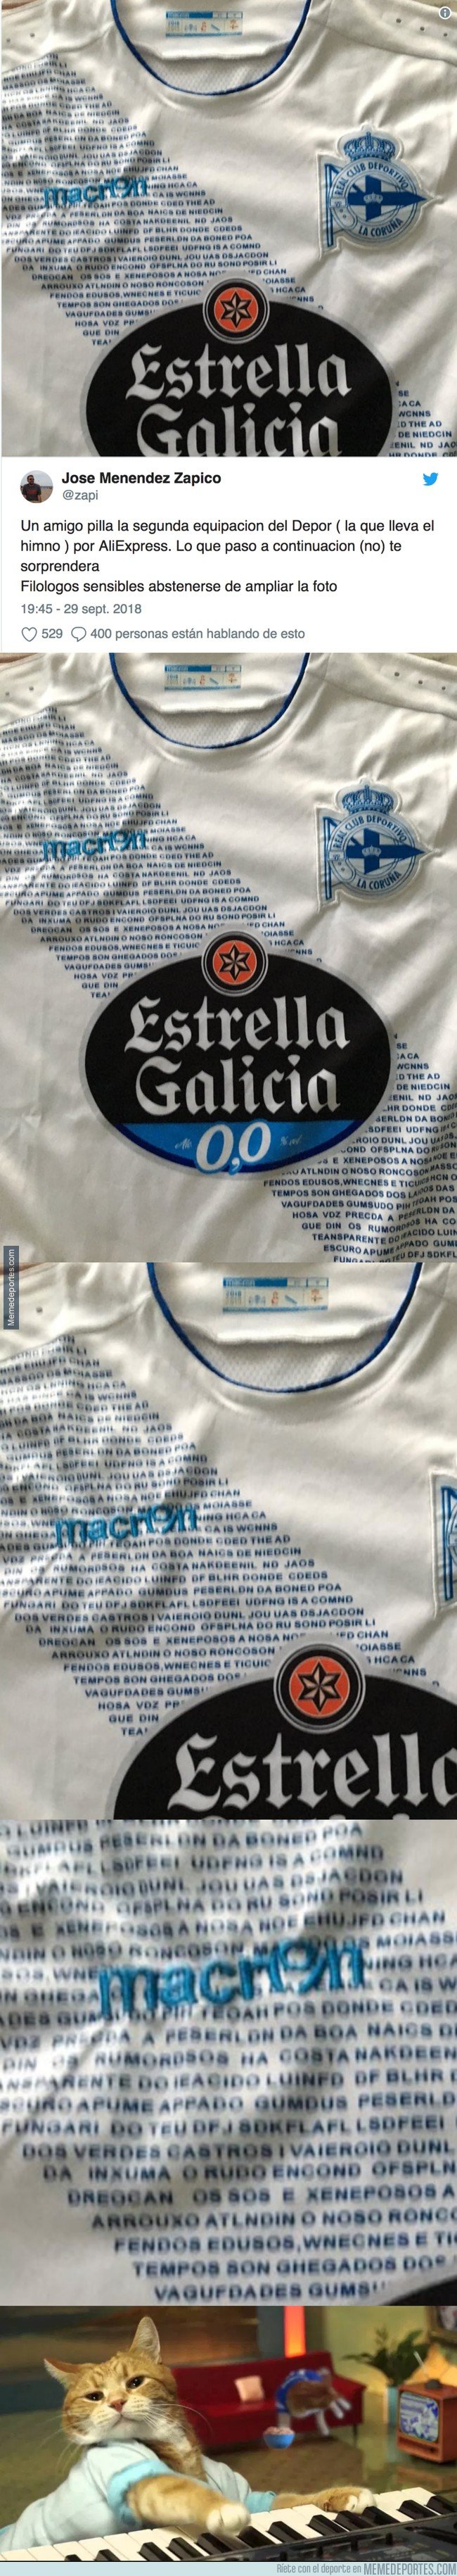 1051969 - Pide por Aliexpress la camiseta del Deportivo y recibe una versión surrealista